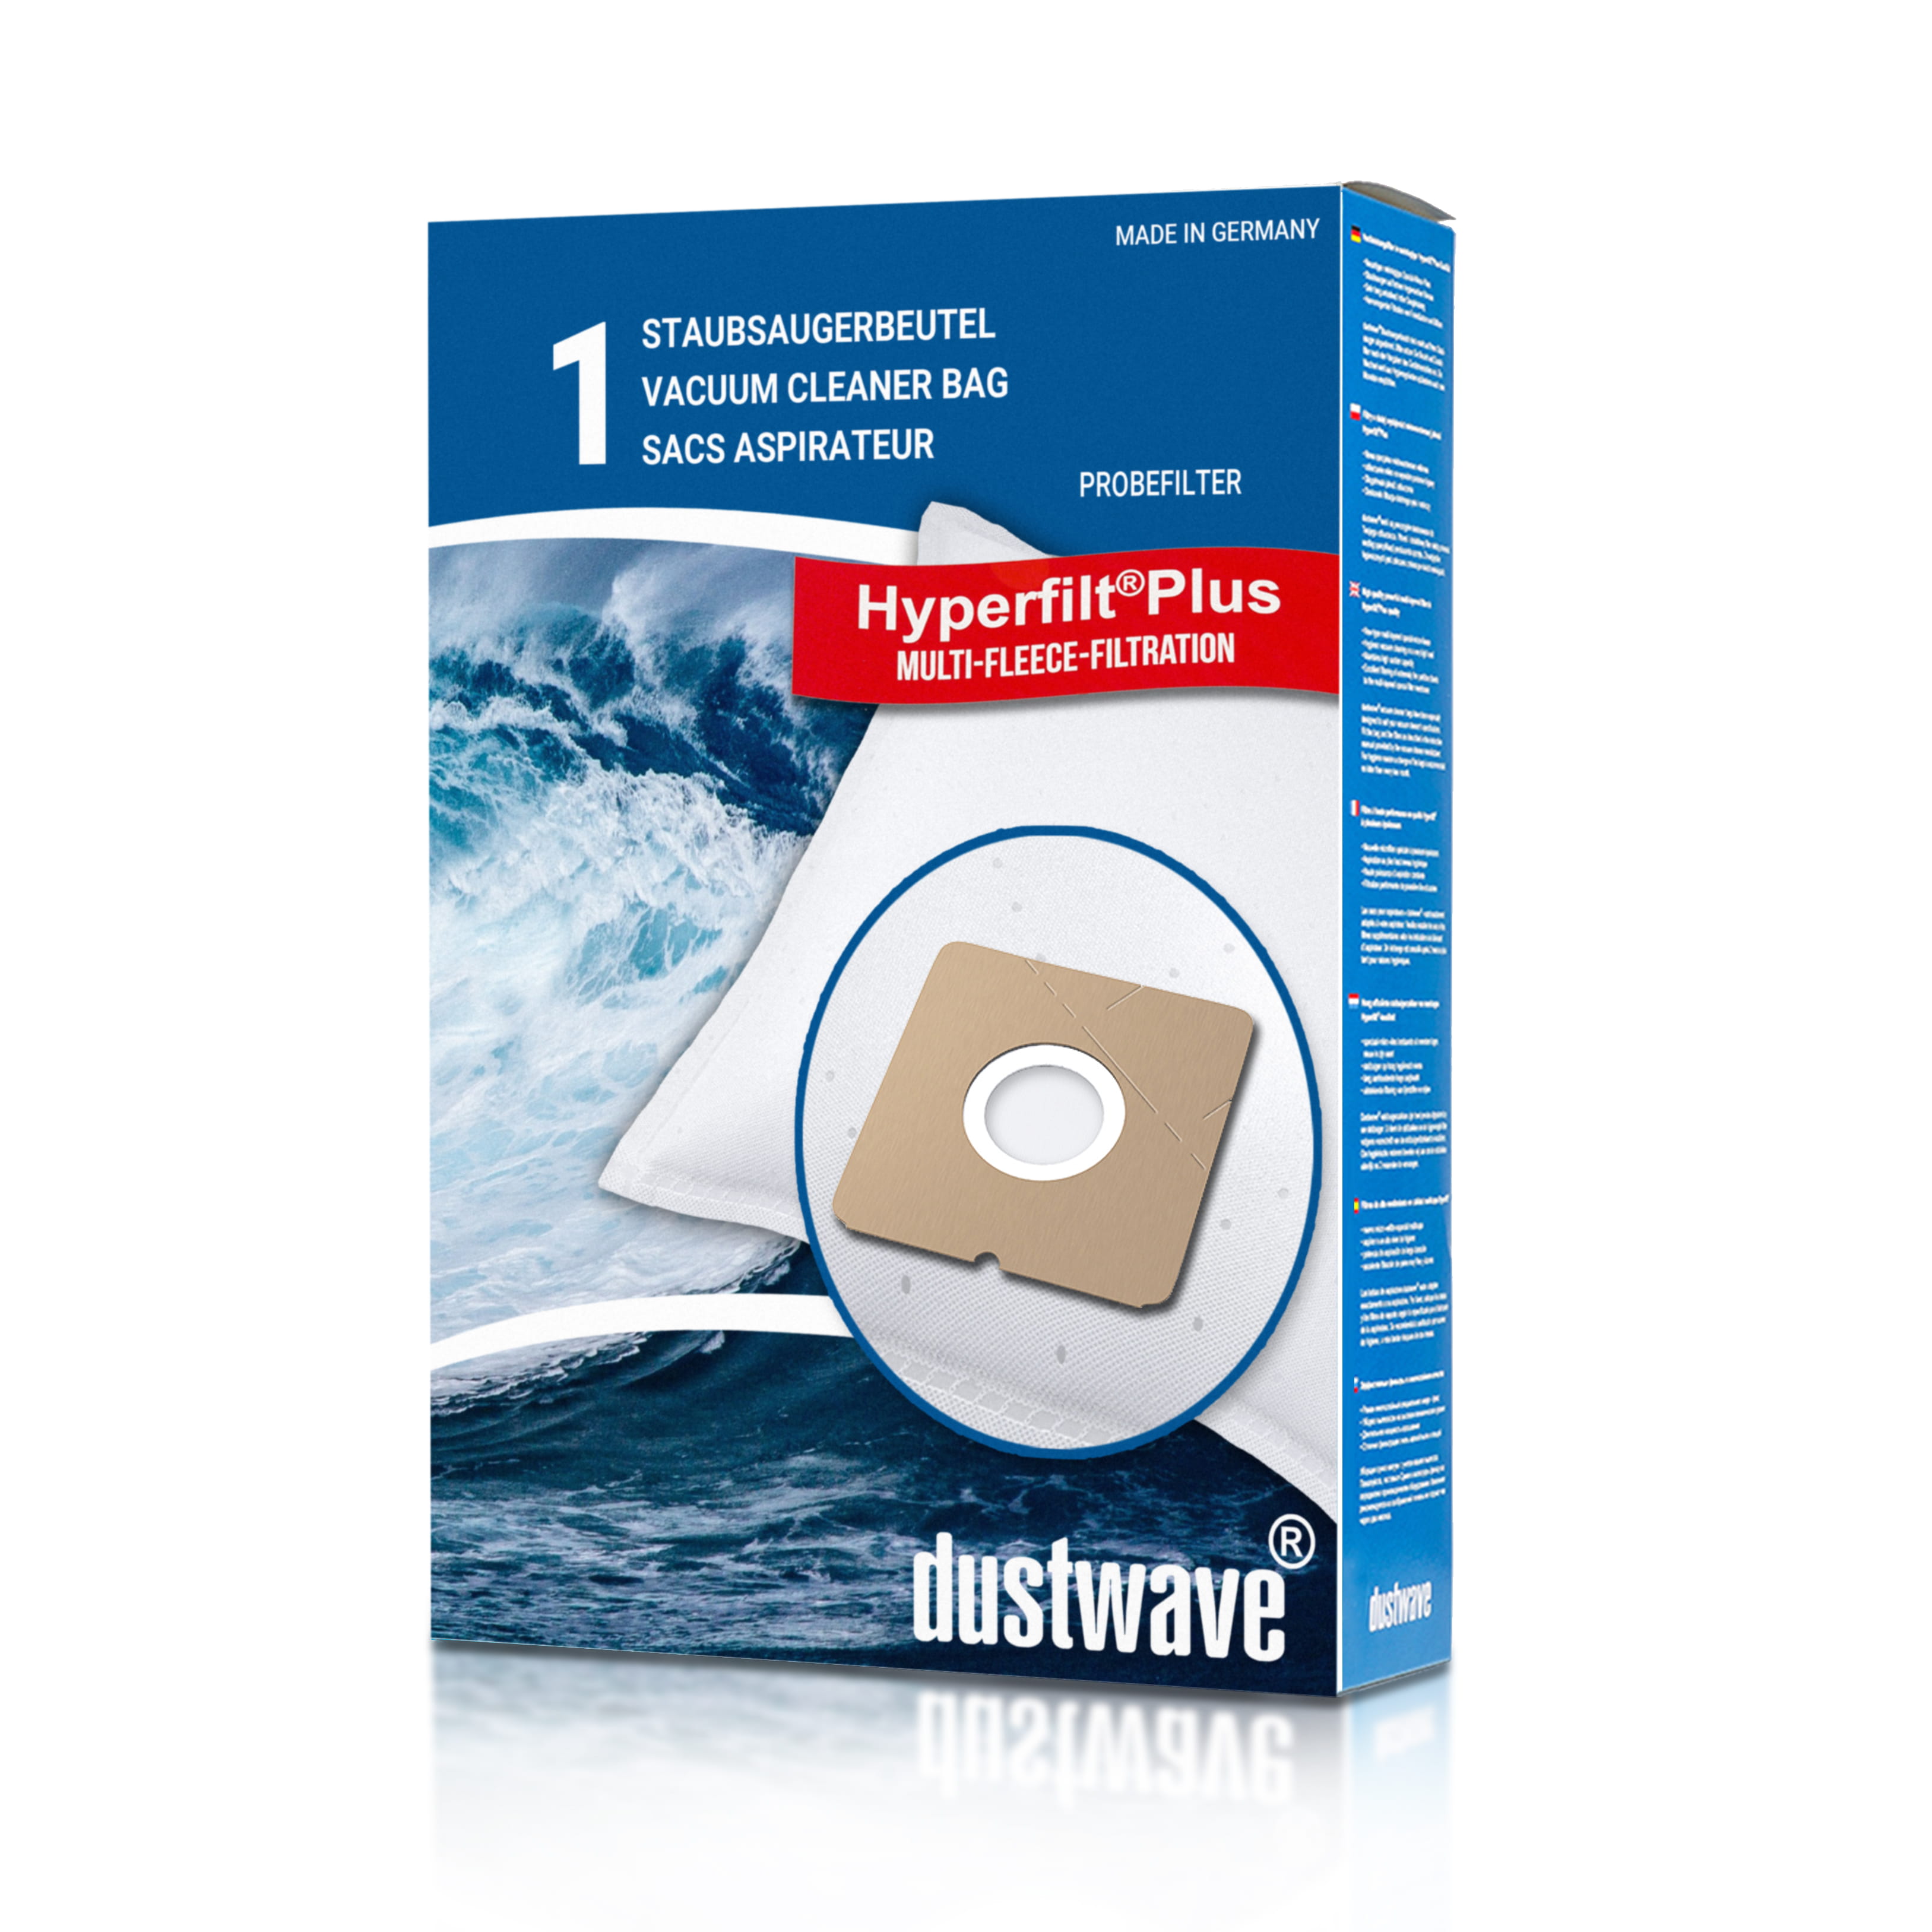 Dustwave® 1 Staubsaugerbeutel für Clean-Maxx PC-H001 - hocheffizient mit Hygieneverschluss - Made in Germany